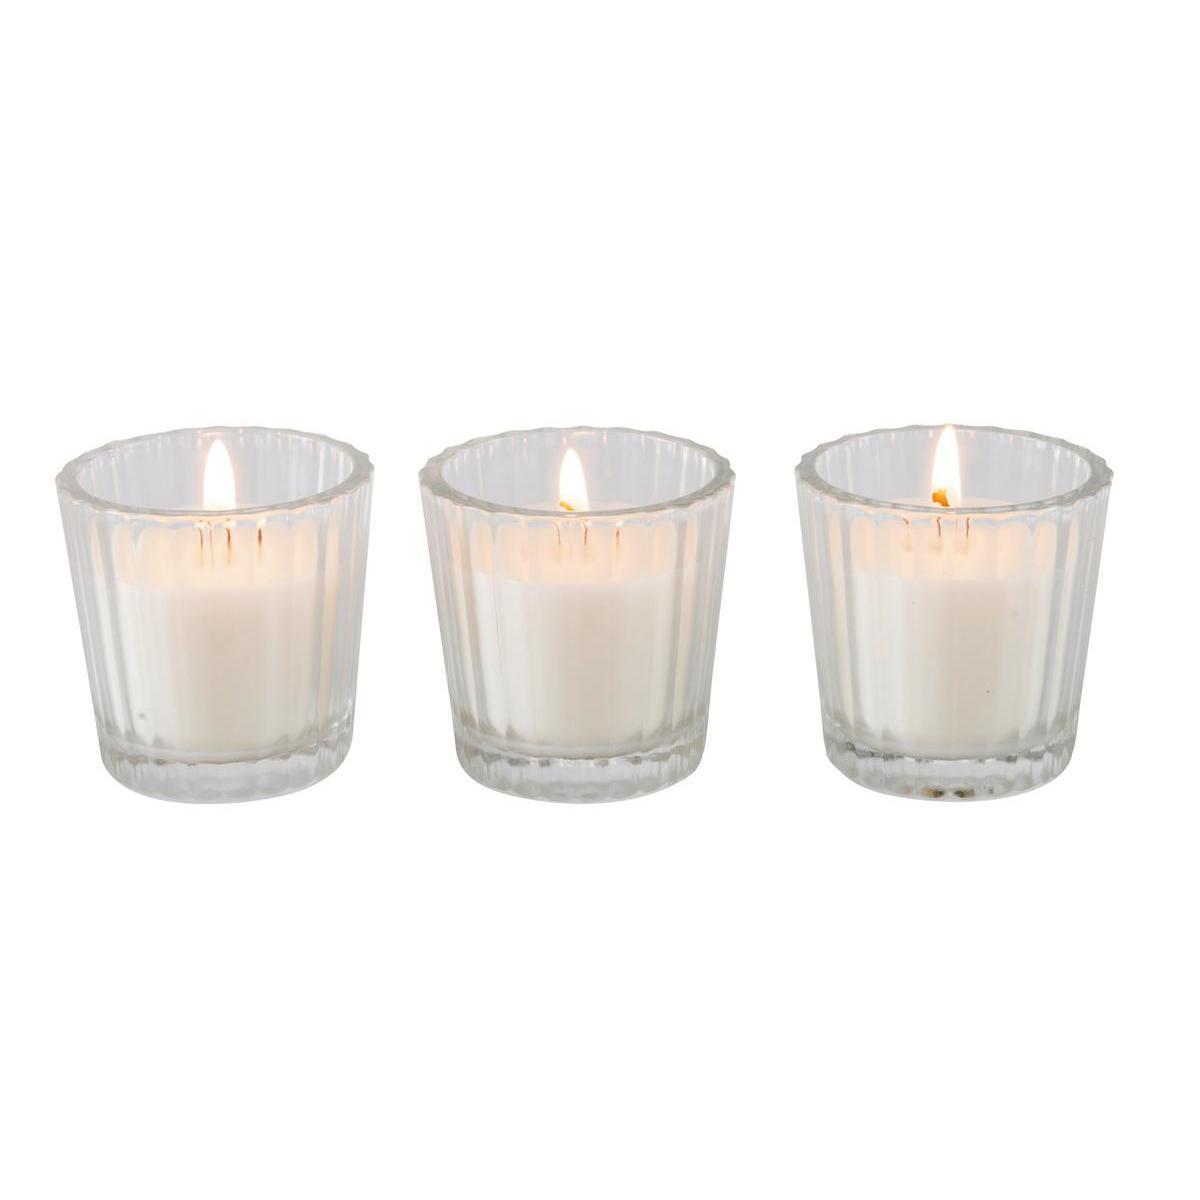 Lot de 3 bougies photophores - Paraffine - 20,7 x 7 x H 6,5 cm - Blanc